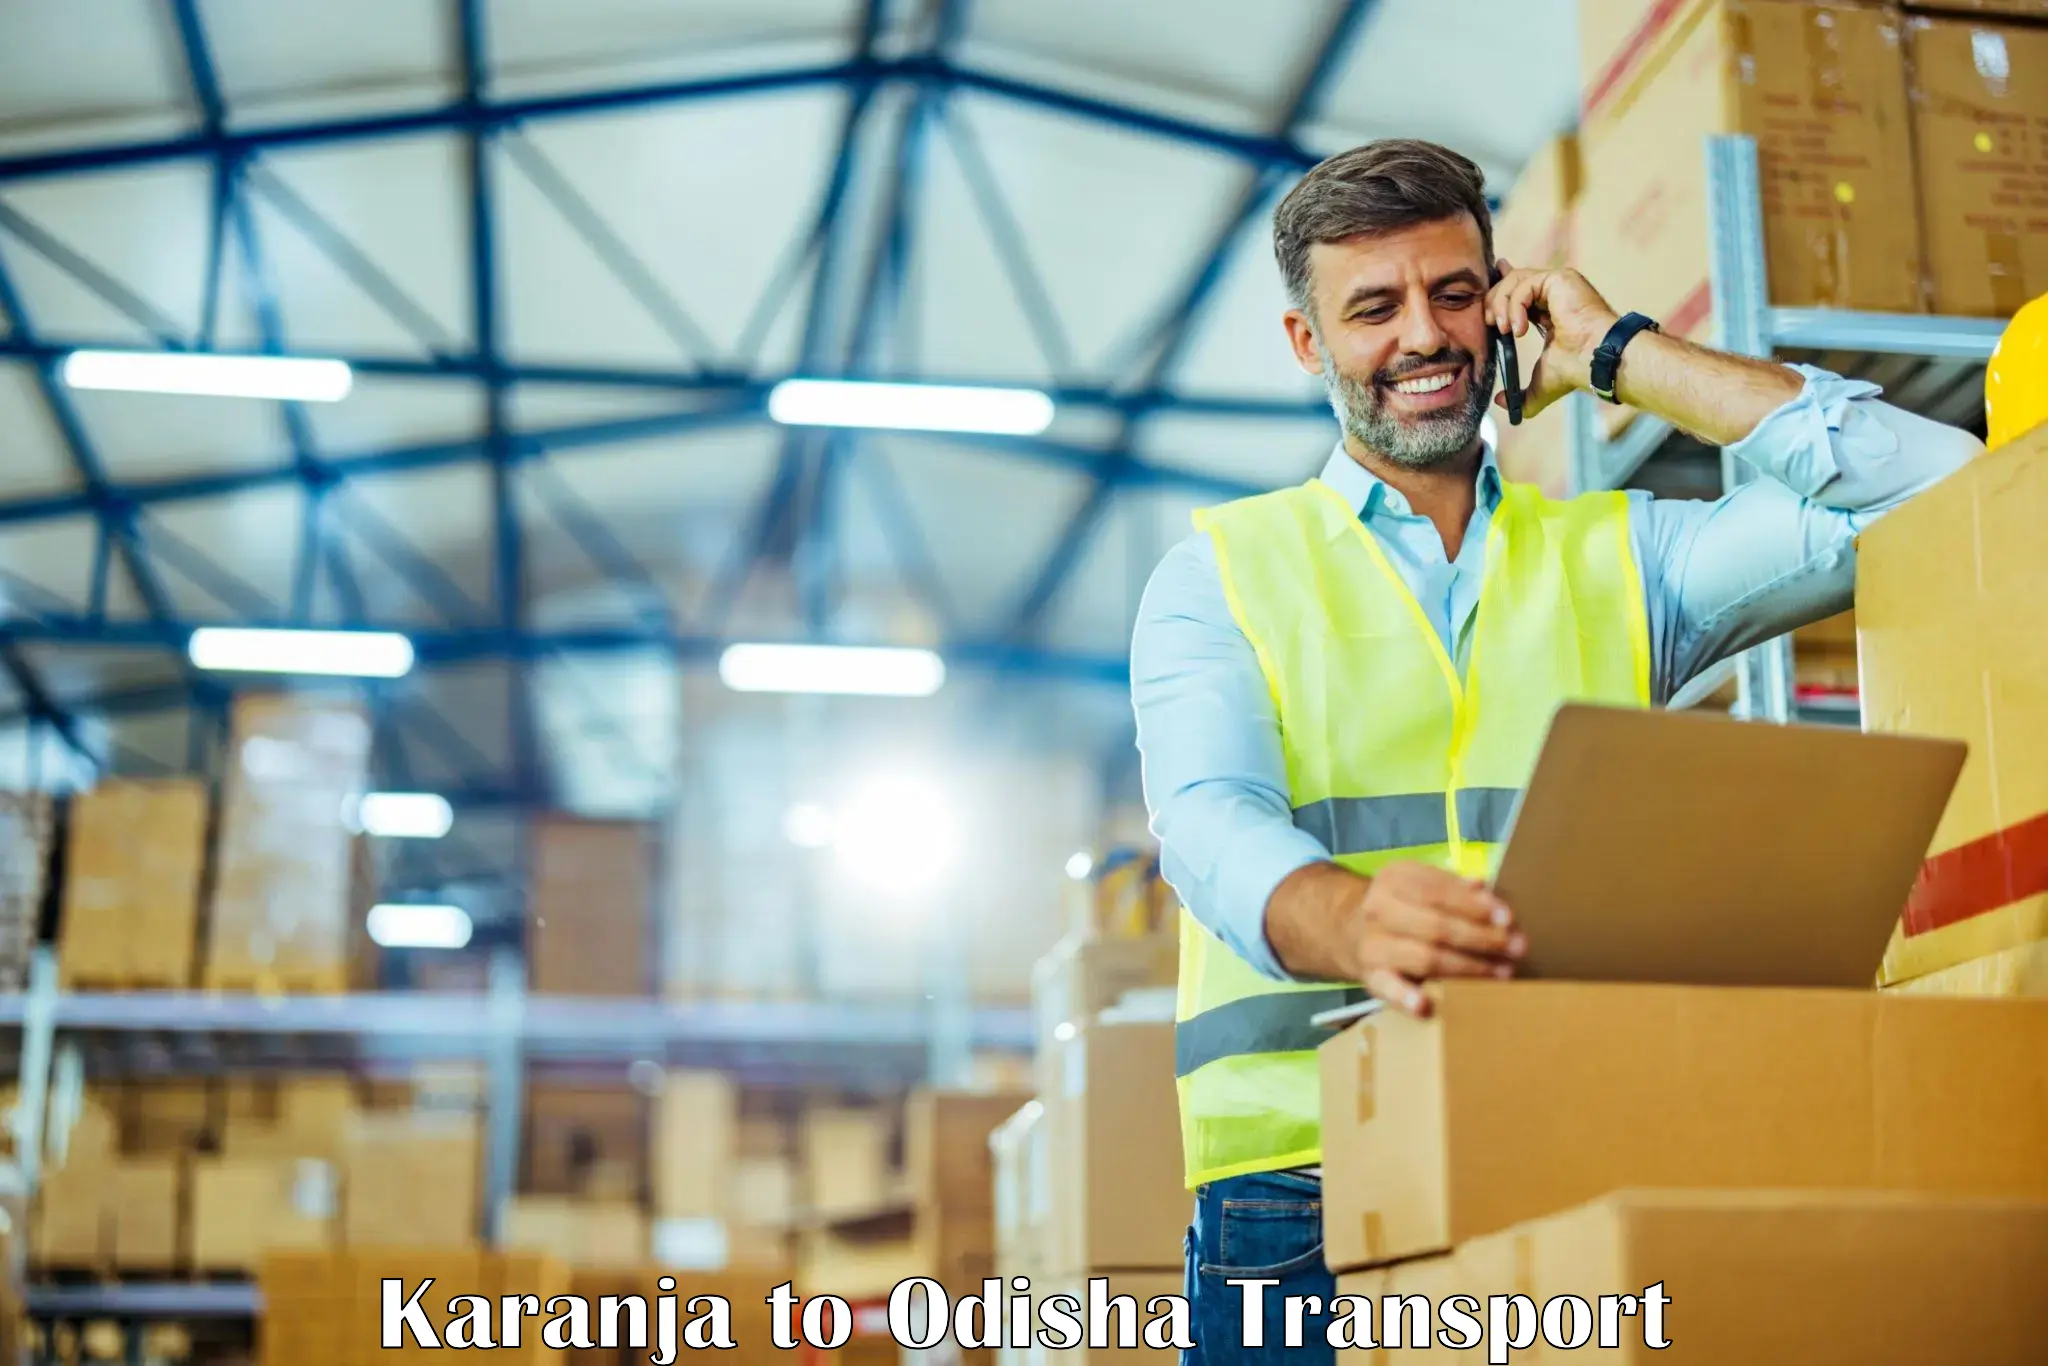 Furniture transport service Karanja to Tihidi